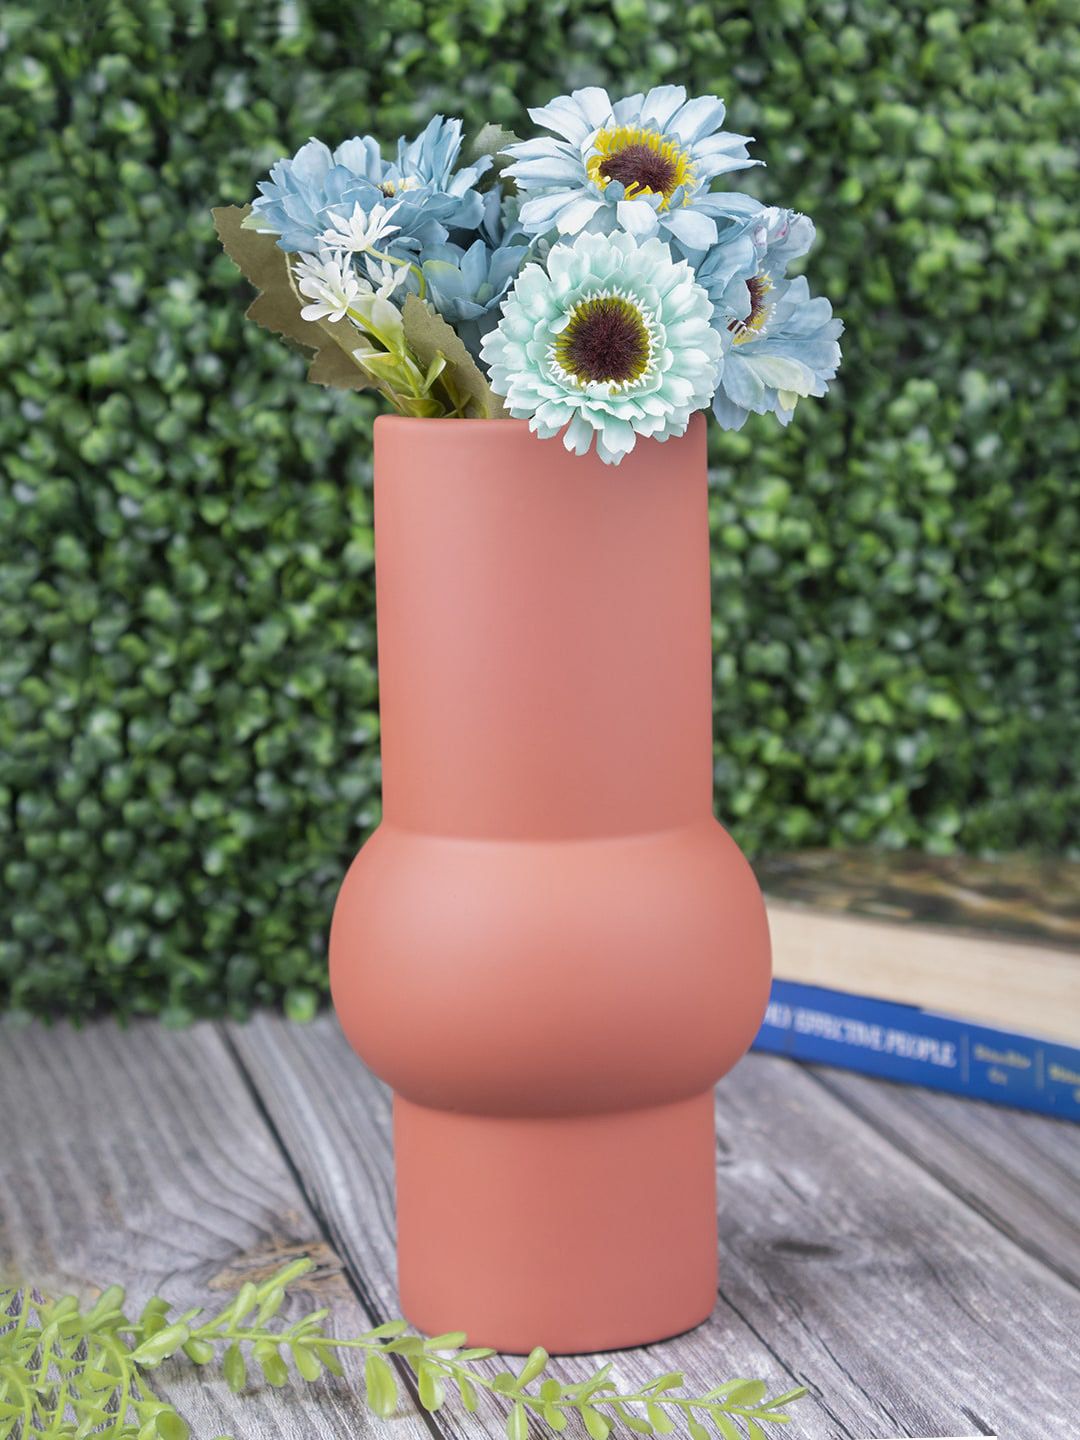 MARKET99 Mauve Textured Ceramic Flower Vase Price in India